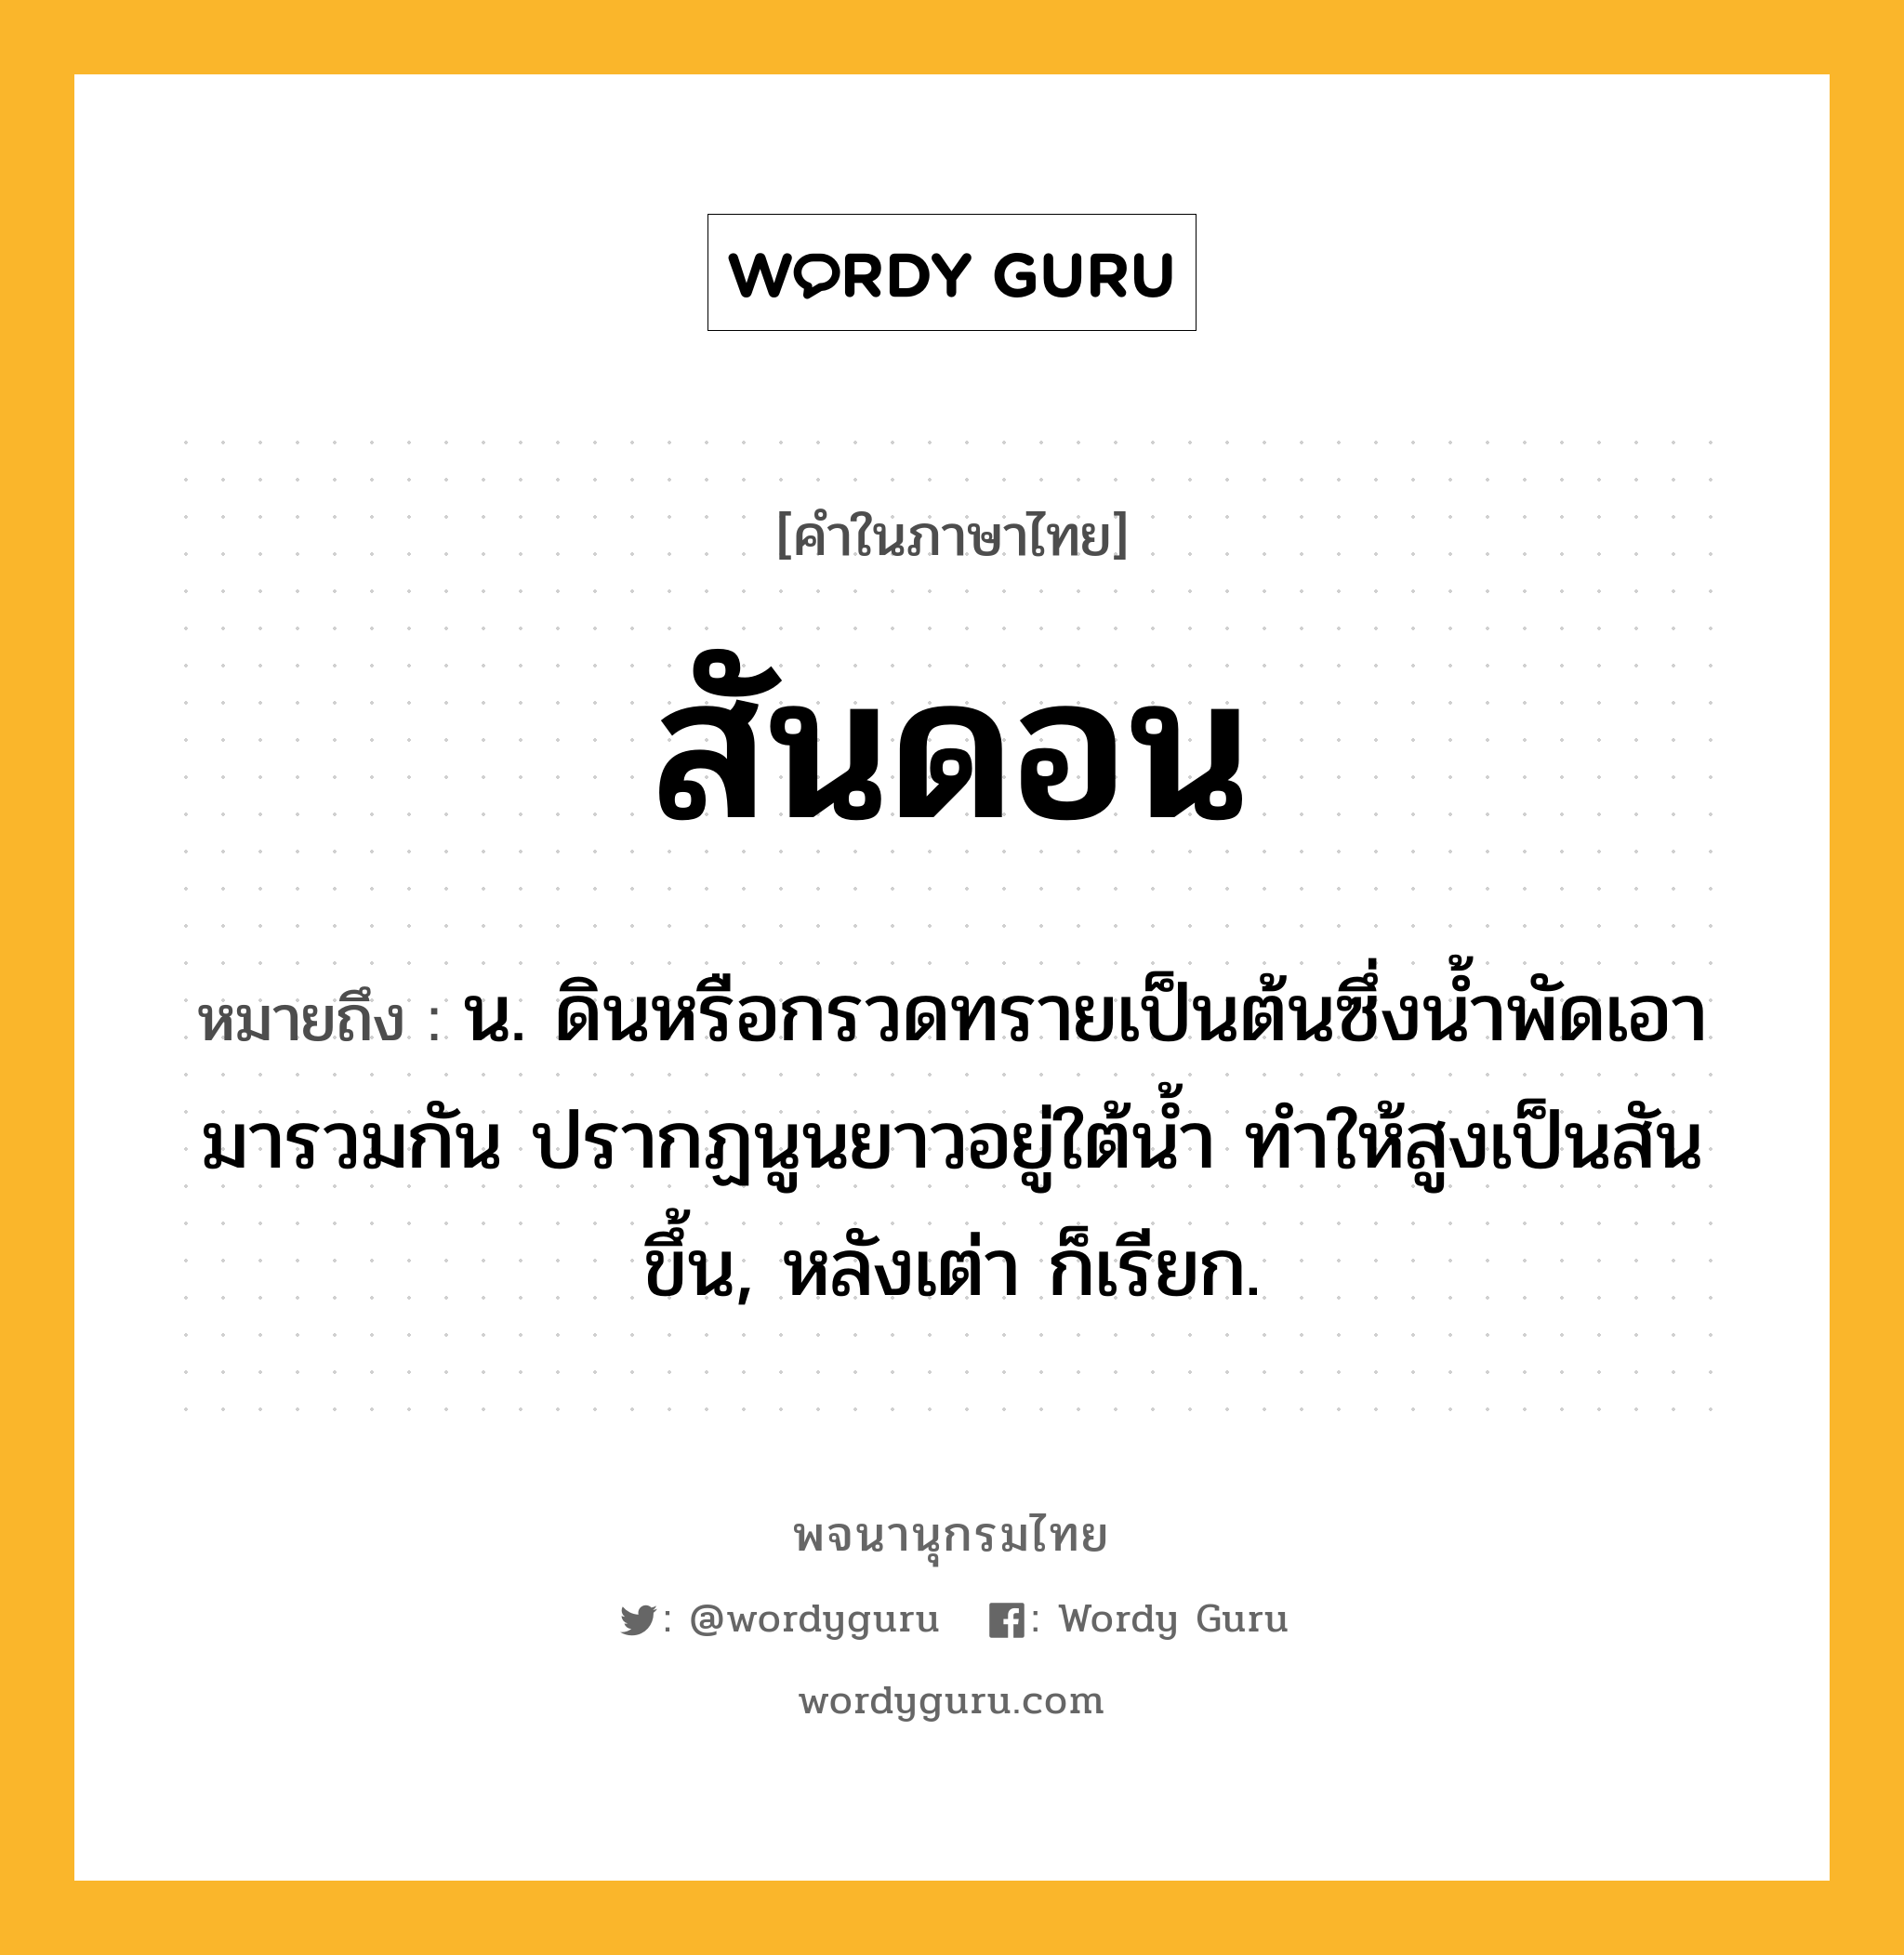 สันดอน หมายถึงอะไร?, คำในภาษาไทย สันดอน หมายถึง น. ดินหรือกรวดทรายเป็นต้นซึ่งนํ้าพัดเอามารวมกัน ปรากฏนูนยาวอยู่ใต้นํ้า ทําให้สูงเป็นสันขึ้น, หลังเต่า ก็เรียก.